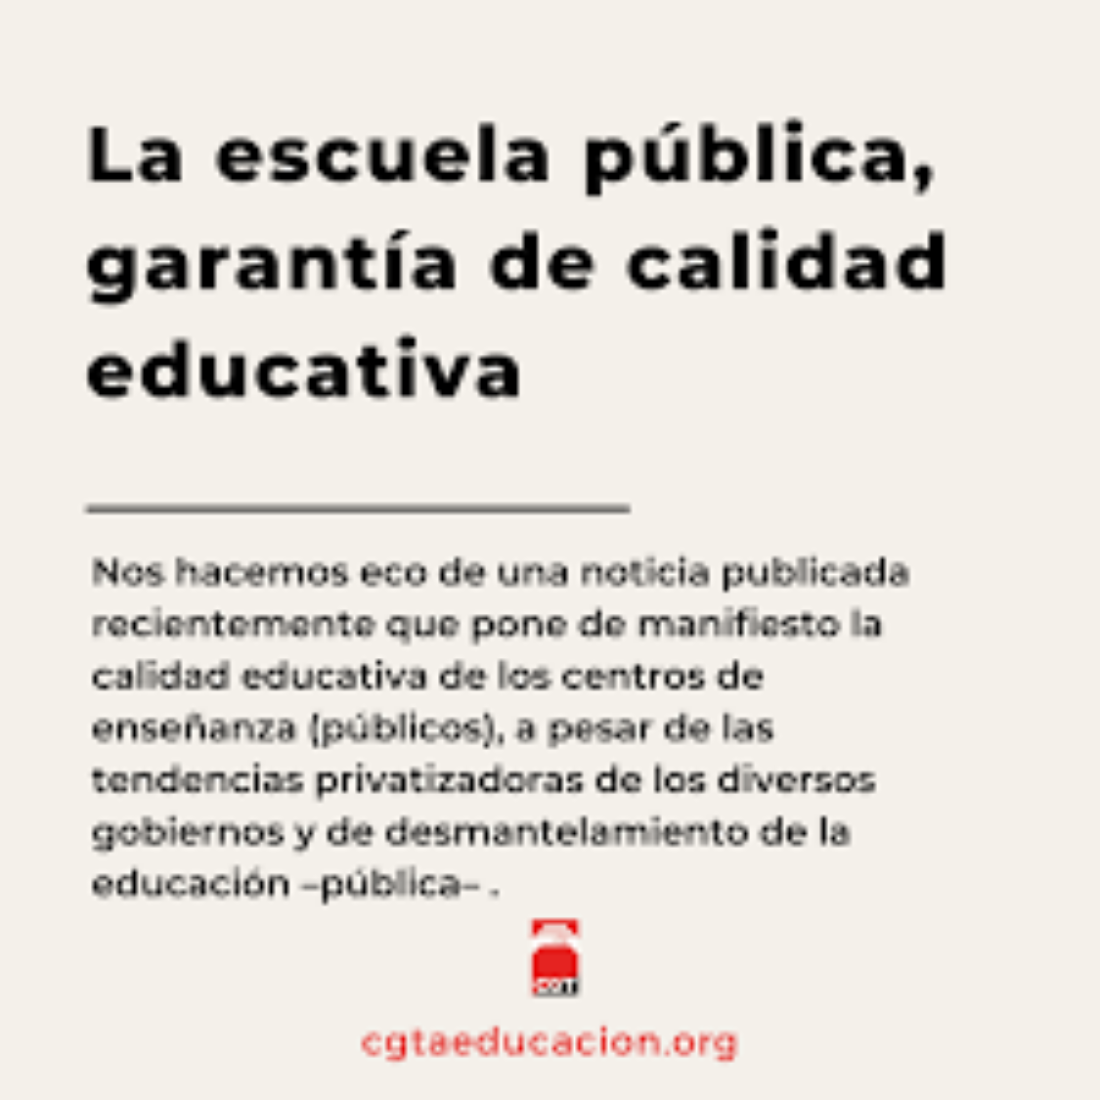 La escuela pública, garantía de calidad educativa